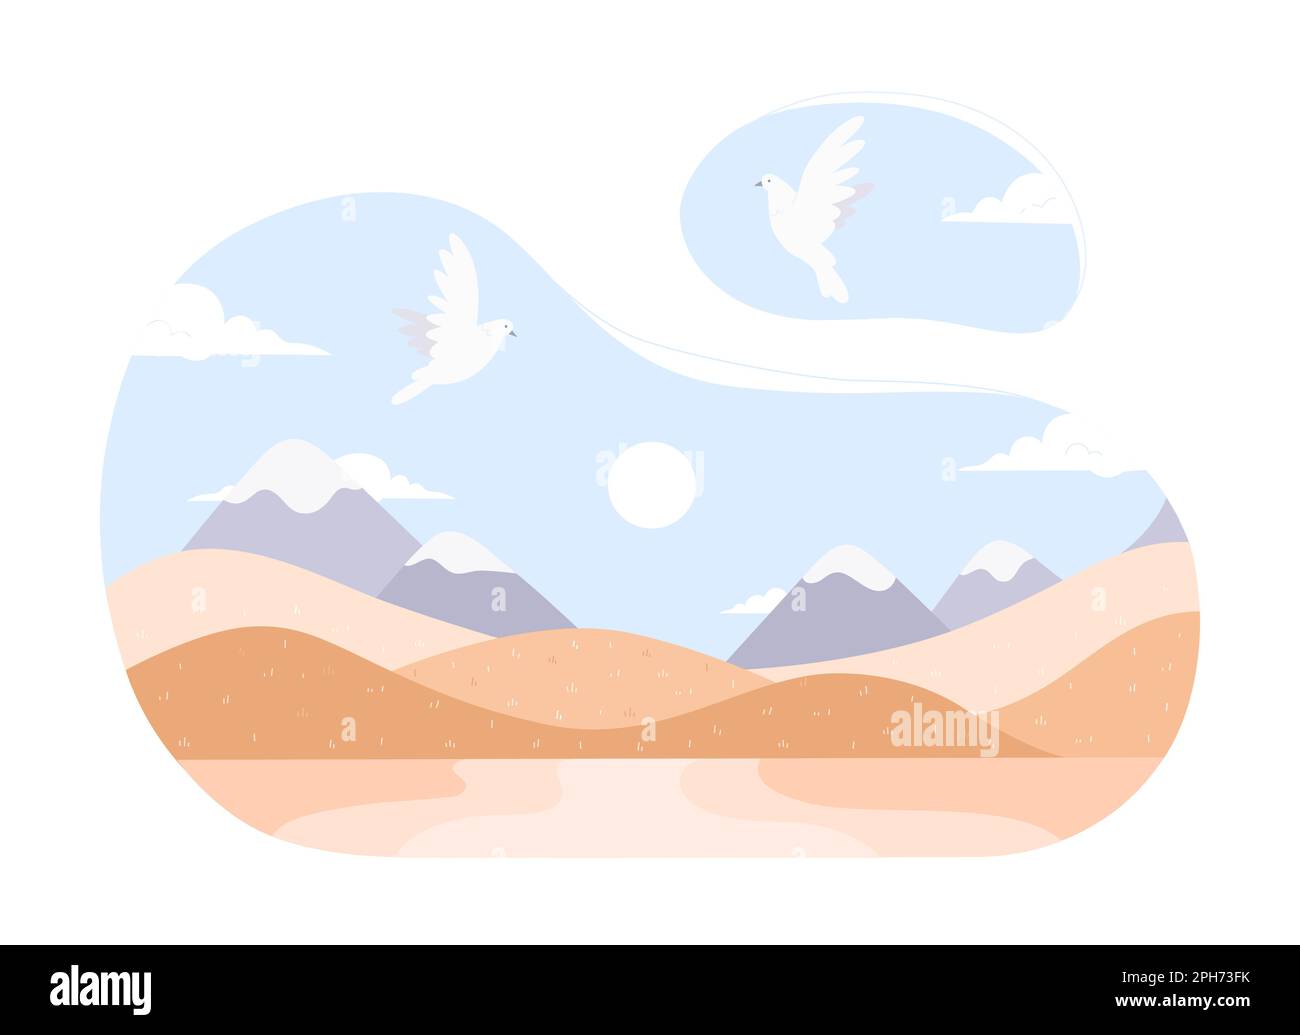 Paysage désertique de sable avec illustration vectorielle de colombes volantes. Dessins animés dunes jaunes sauvages minimalistes, terrain avec collines et sommets de montagne à l'horizon, les pigeons blancs volent dans le ciel bleu sur des terres sèches Illustration de Vecteur